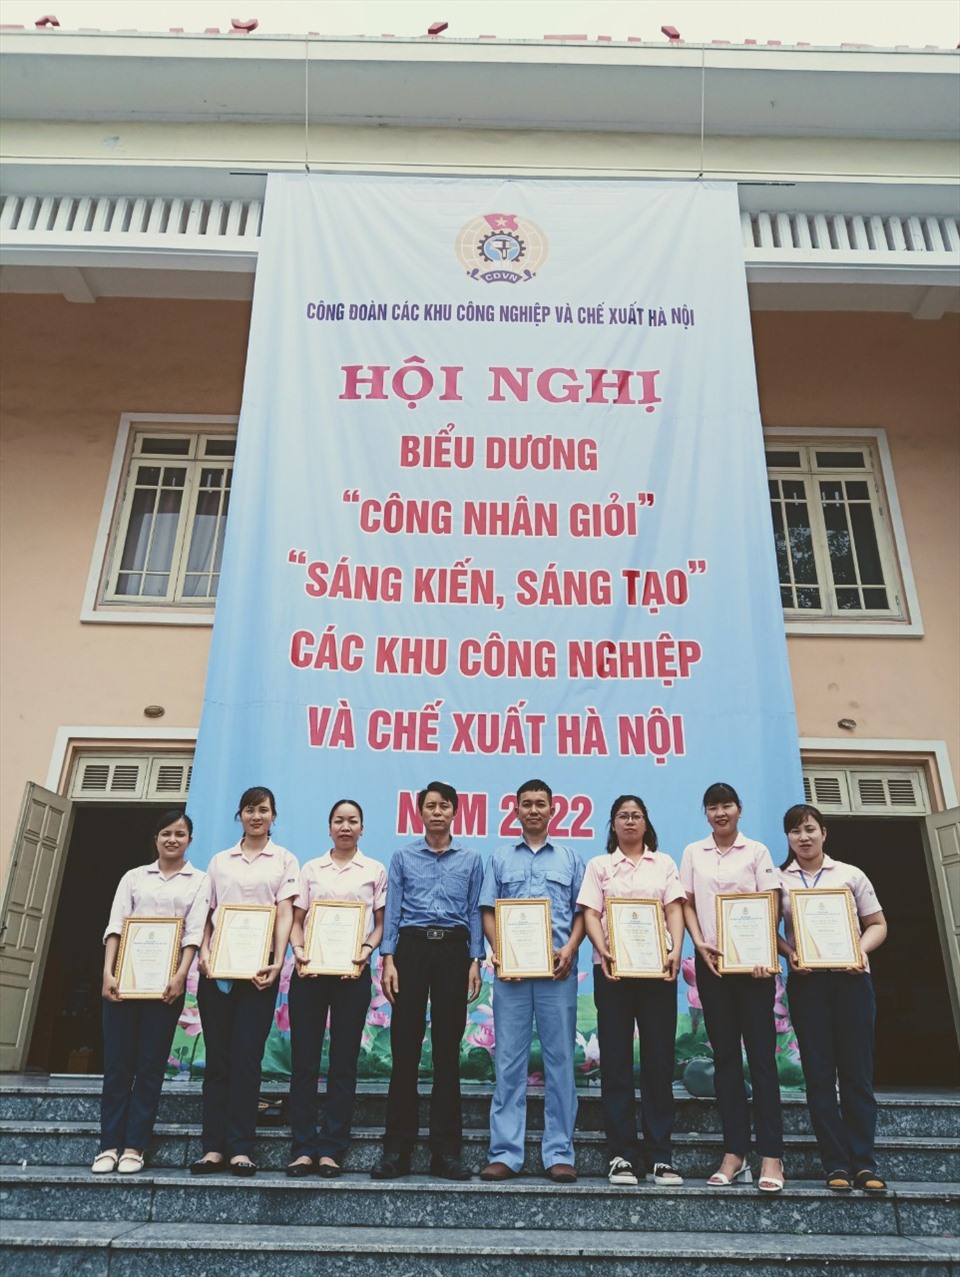 Ông Nguyễn Đức Nhân (thứ 3 từ trái sang) – Chủ tịch Công đoàn và công nhân Công ty TNHH Asti Hà Nội đạt danh hiệu trong các phong trào thi đua. Ảnh: CĐCT